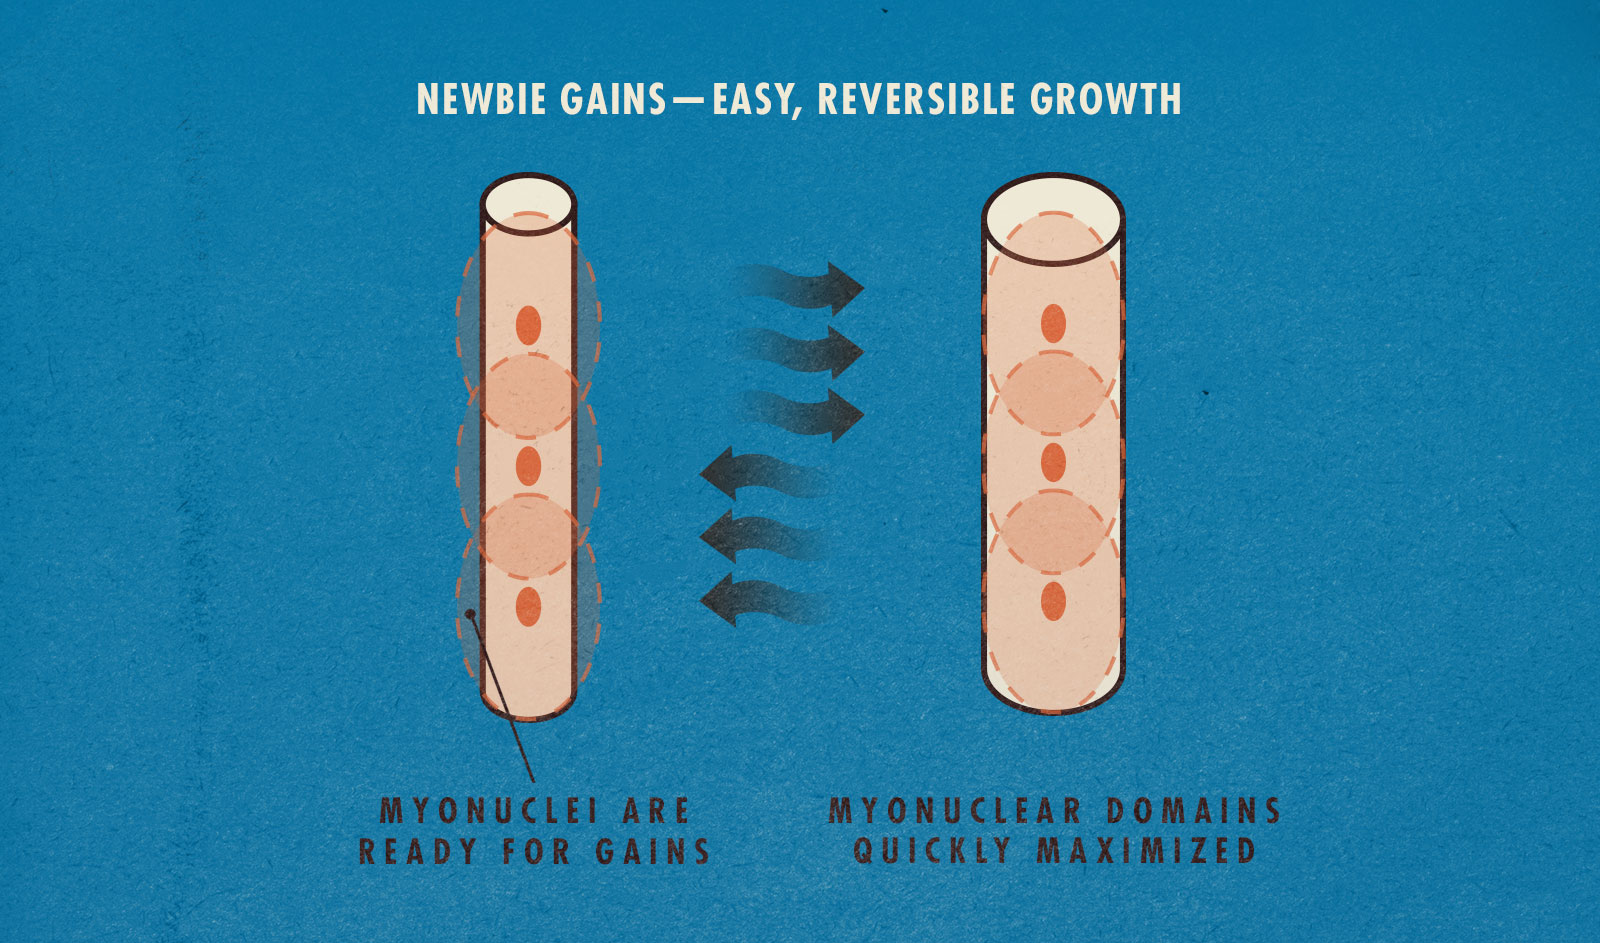 Newbie gains diagram